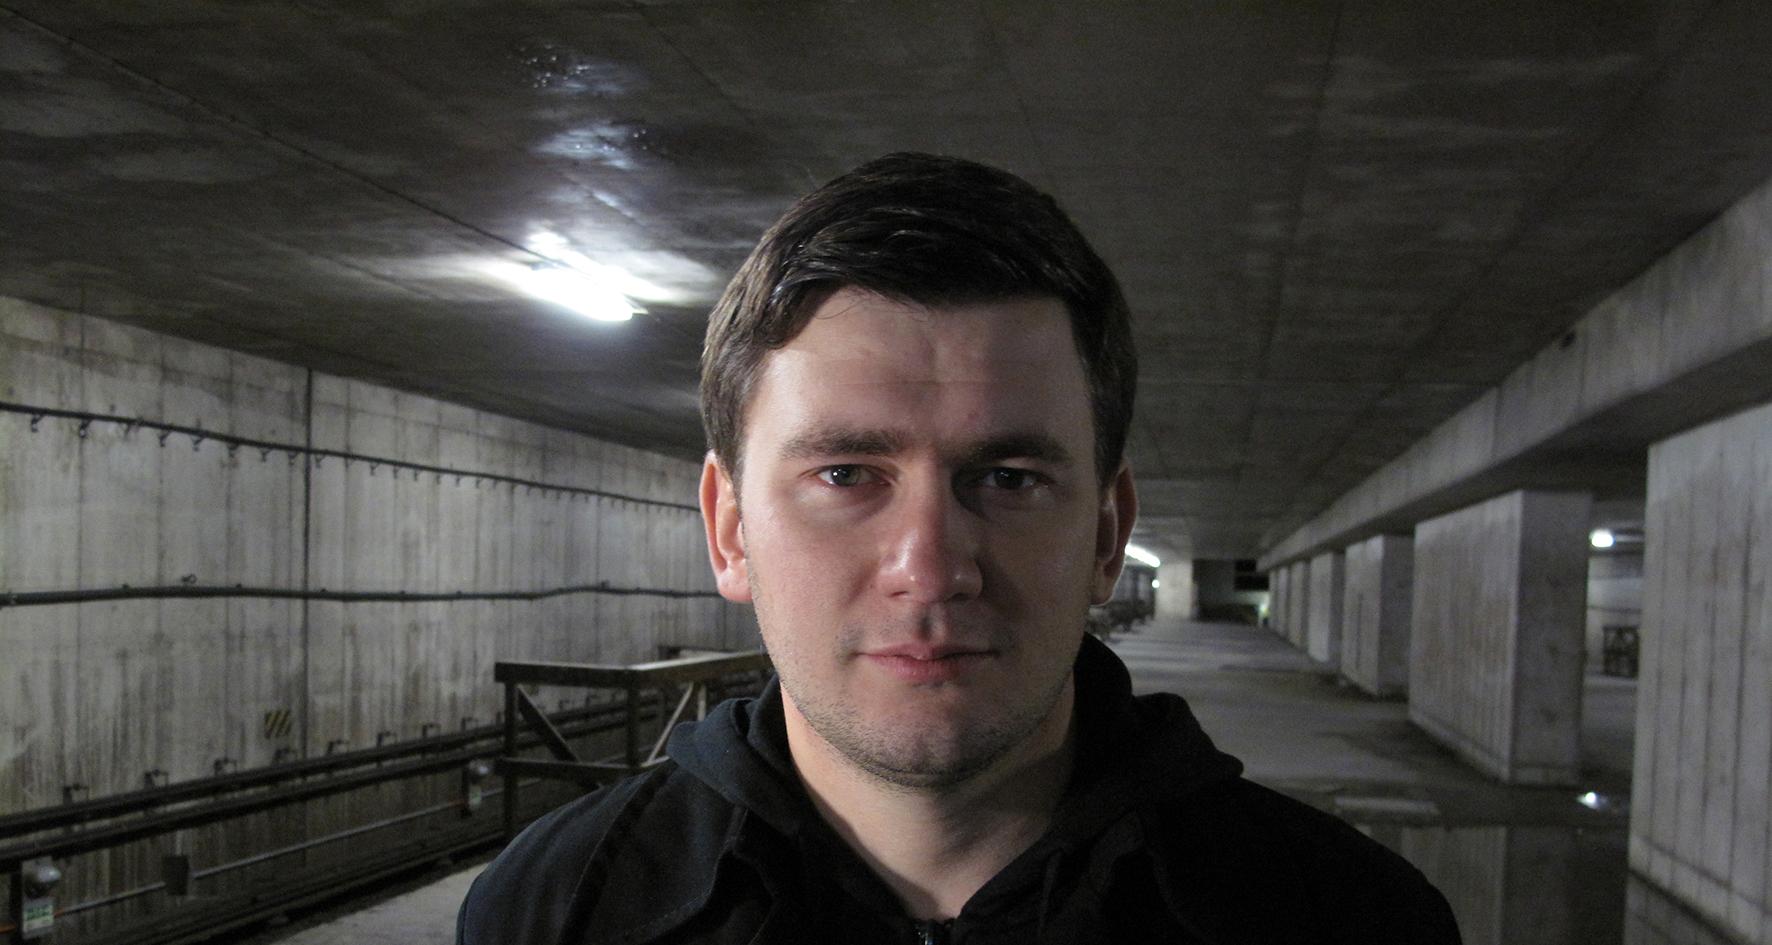 Dmitrij Gluchovskij slog igenom med bästsäljaren ”Metro 2033”.